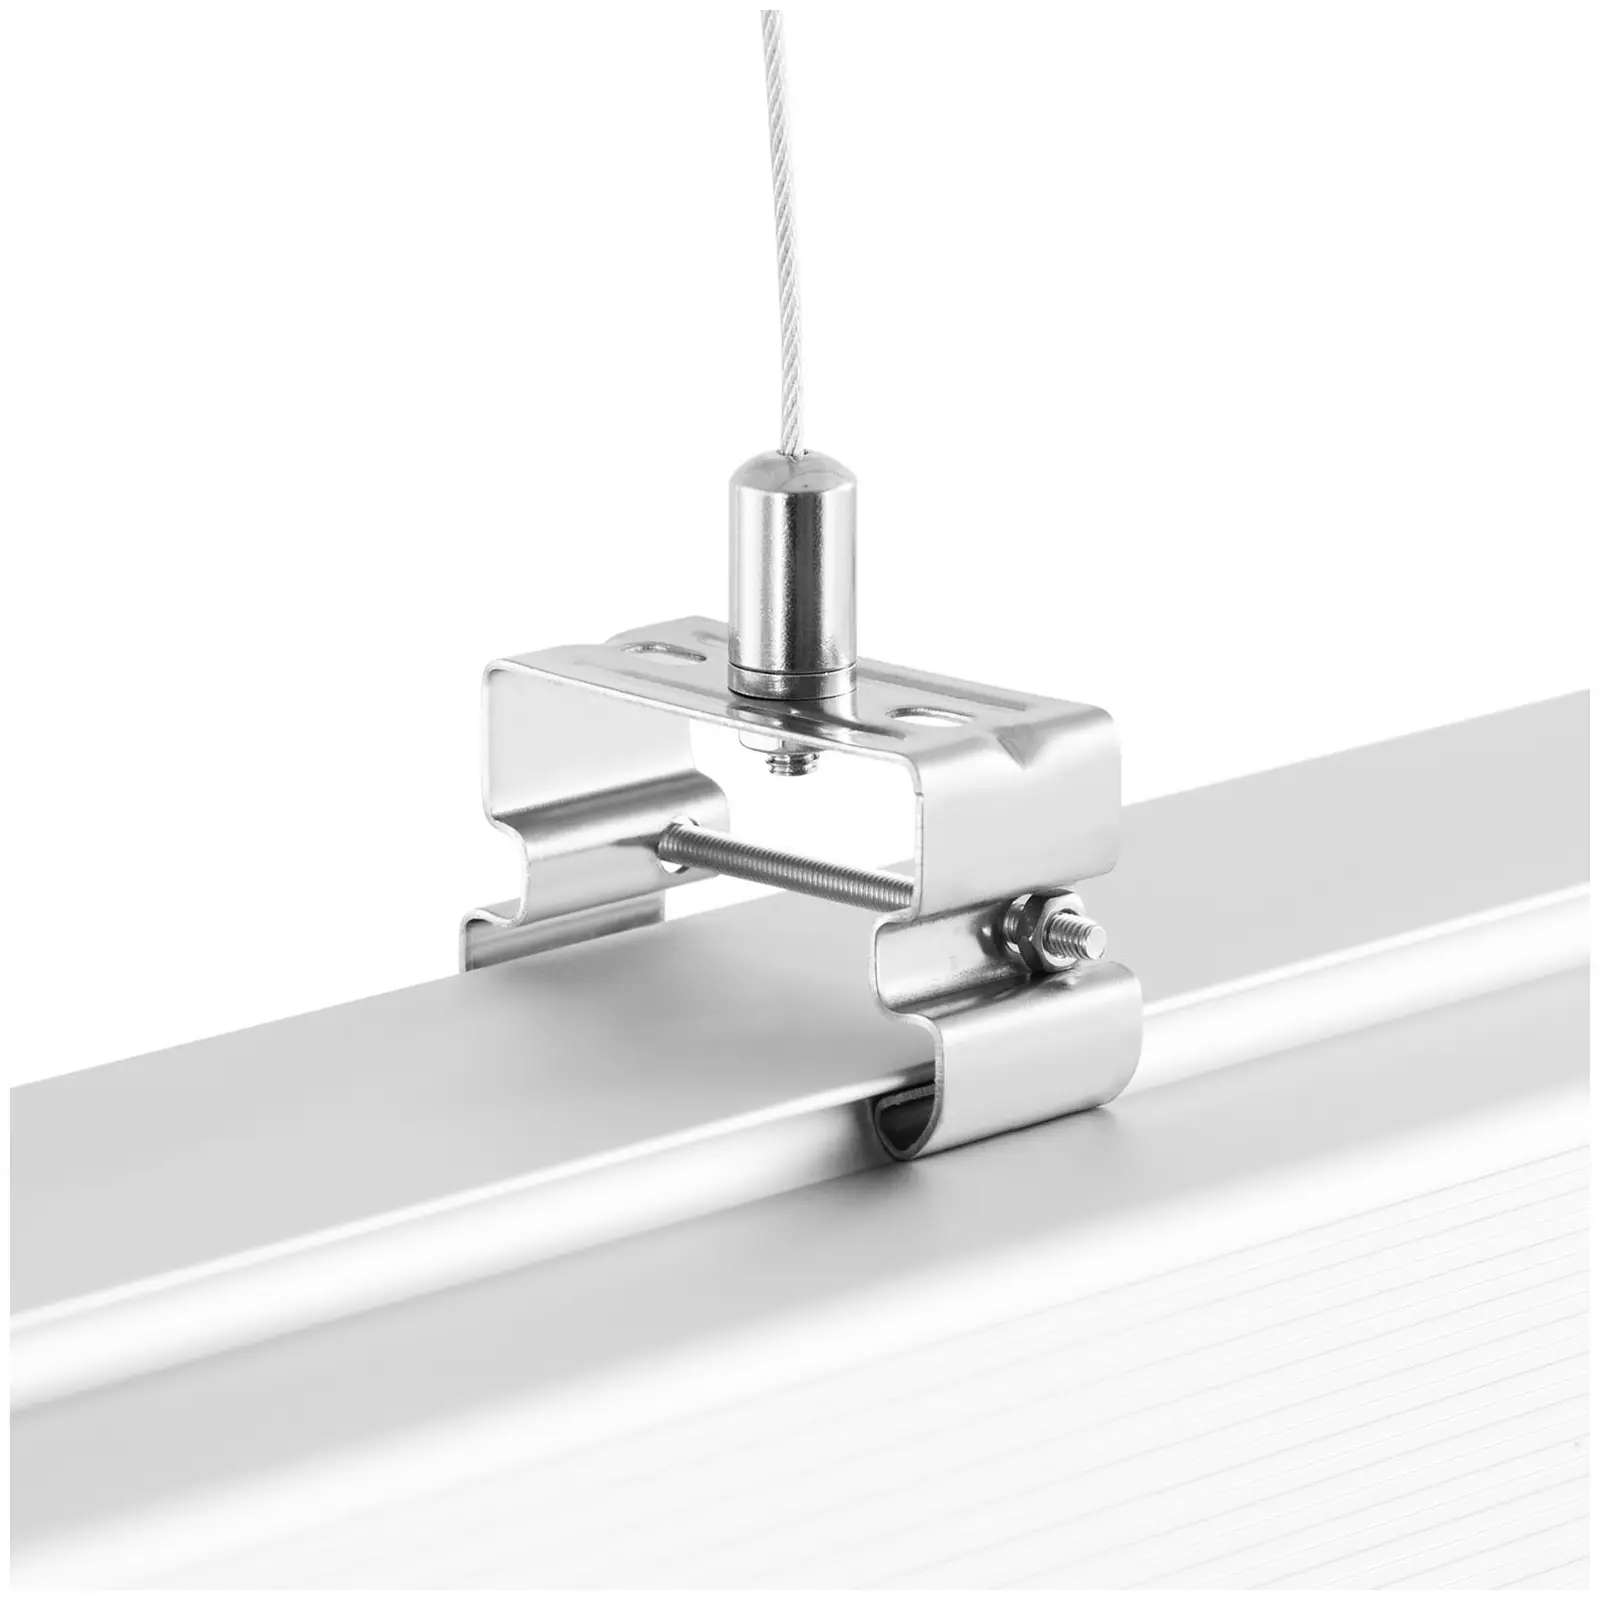 LED lámpa nedves helyiségbe - 25 darabos készlet - 40 W - 90 cm - 4400 lm - 6000-6500 K